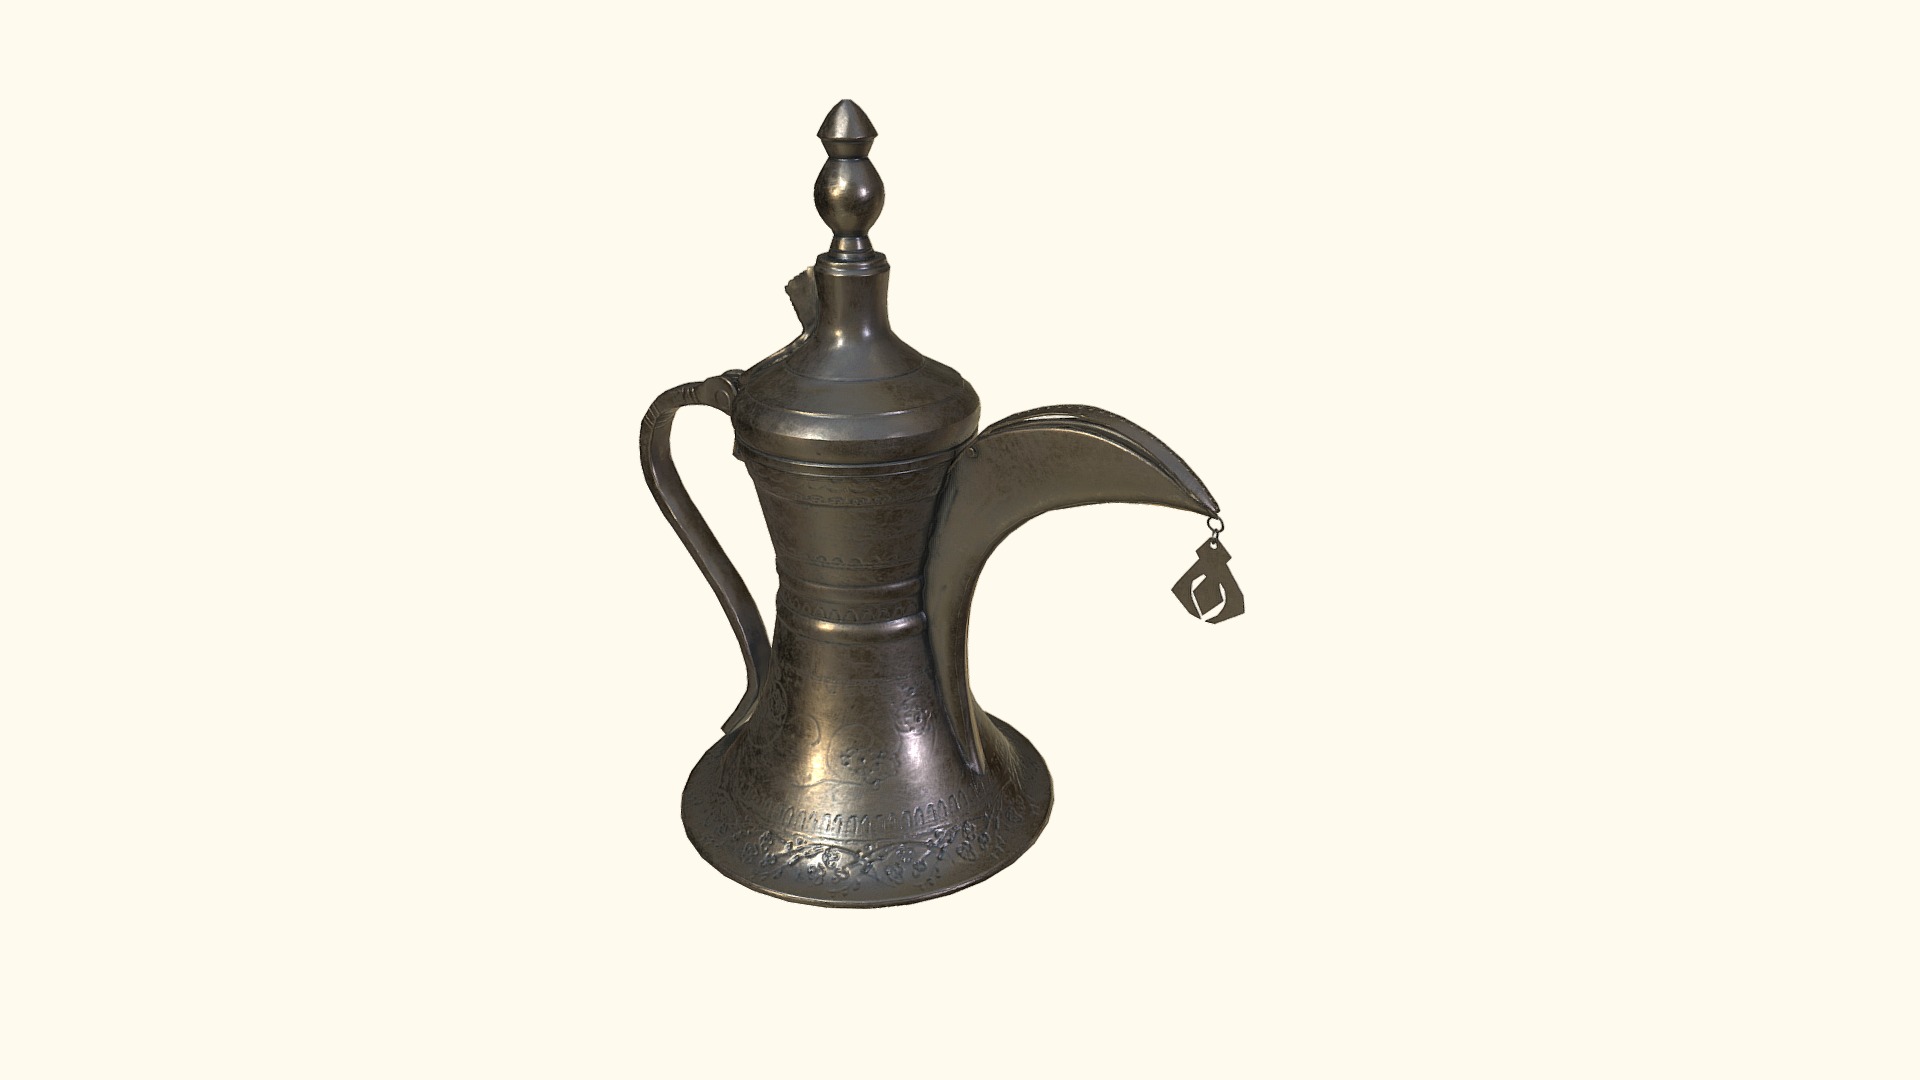 Ấm chứa cà phê của Ả Rập, có niên đại khoảng thế kỷ 18, gọi là “dallah” được chế tác hoàn toàn thủ công. Được phát triển ở Trung Đông, đóng một vai trò tích cực trong việc pha chế cà phê. Đối với người Ả Rập, dallah đồng nghĩa với truyền thống Bedouin cổ xưa, nơi nghi lễ pha chế, phục vụ và uống cà phê là dấu hiệu của lòng hiếu khách, sự hào phóng và giàu có. Ở phần lớn Trung Đông, nó vẫn được kết nối để giao lưu với bạn bè, gia đình và đối tác kinh doanh, vì vậy nó thường xuất hiện trong các nghi thức chính của các sự kiện lớn, nhỏ. Việc phục vụ cà phê Ả Rập được hướng dẫn bằng các nghi thức công phu cho người phục vụ, khách và chủ nhà. Người phục vụ phải cầm dallah bằng tay trái, với ngón tay cái hướng lên trên và cầm cốc bằng tay phải. Tương tự như vậy, nghi thức dành cho khách yêu cầu họ phải sử dụng tay phải để nhận và trả cốc cho người phục vụ. Khách quan trọng nhất hoặc lớn tuổi nhất được phục vụ trước, và cốc chỉ được rót đầy một phần tư. Sau đó nó có thể được nạp lại 3d model